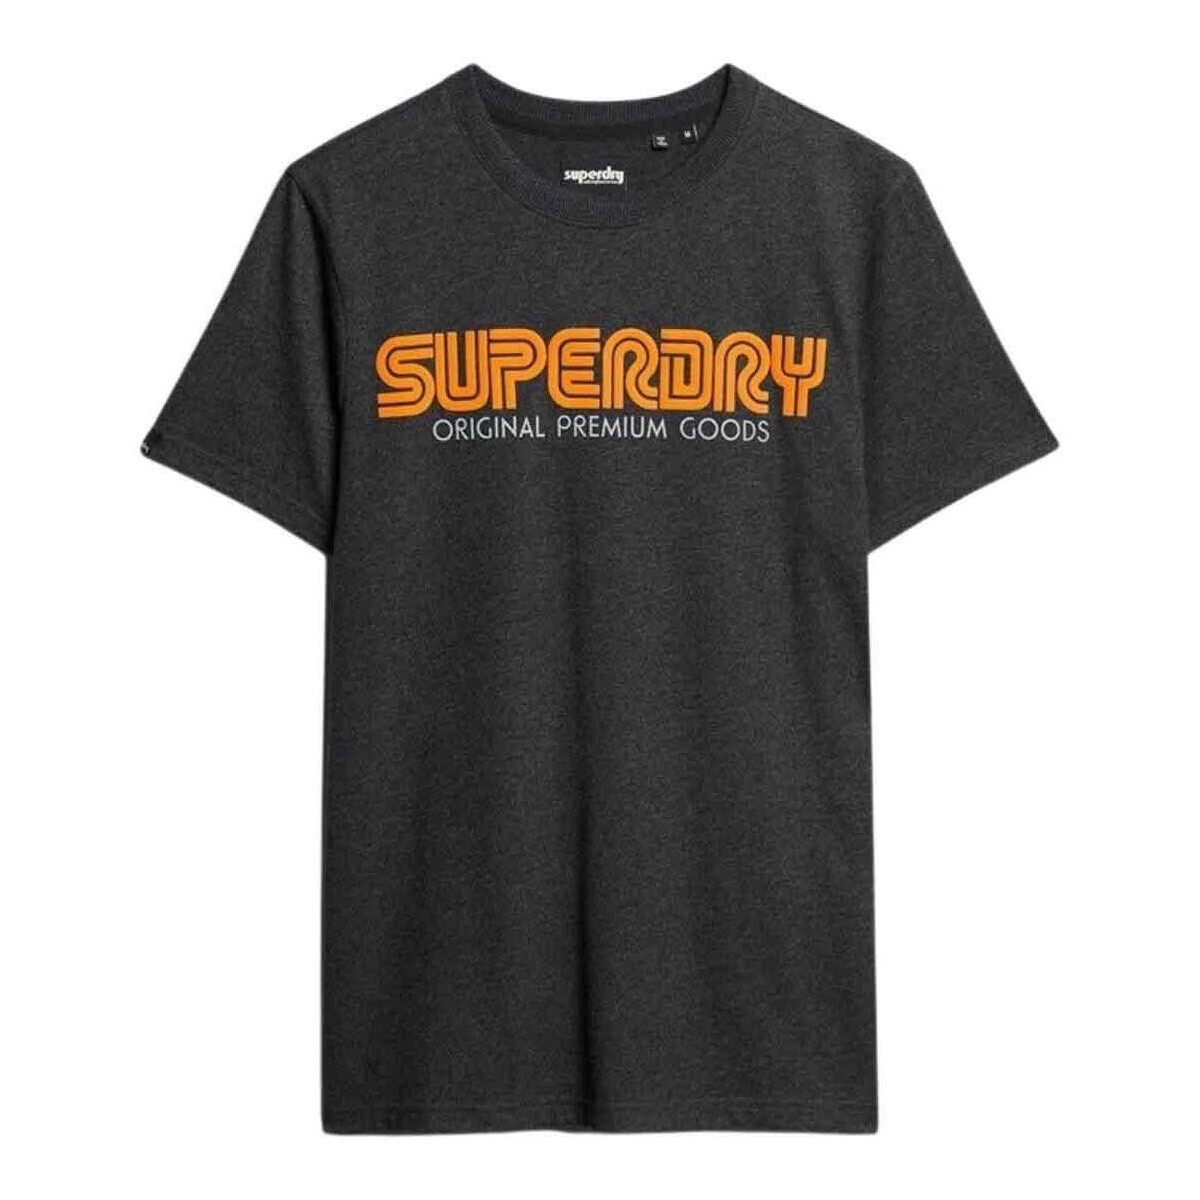 Textiel Heren T-shirts korte mouwen Superdry  Blauw